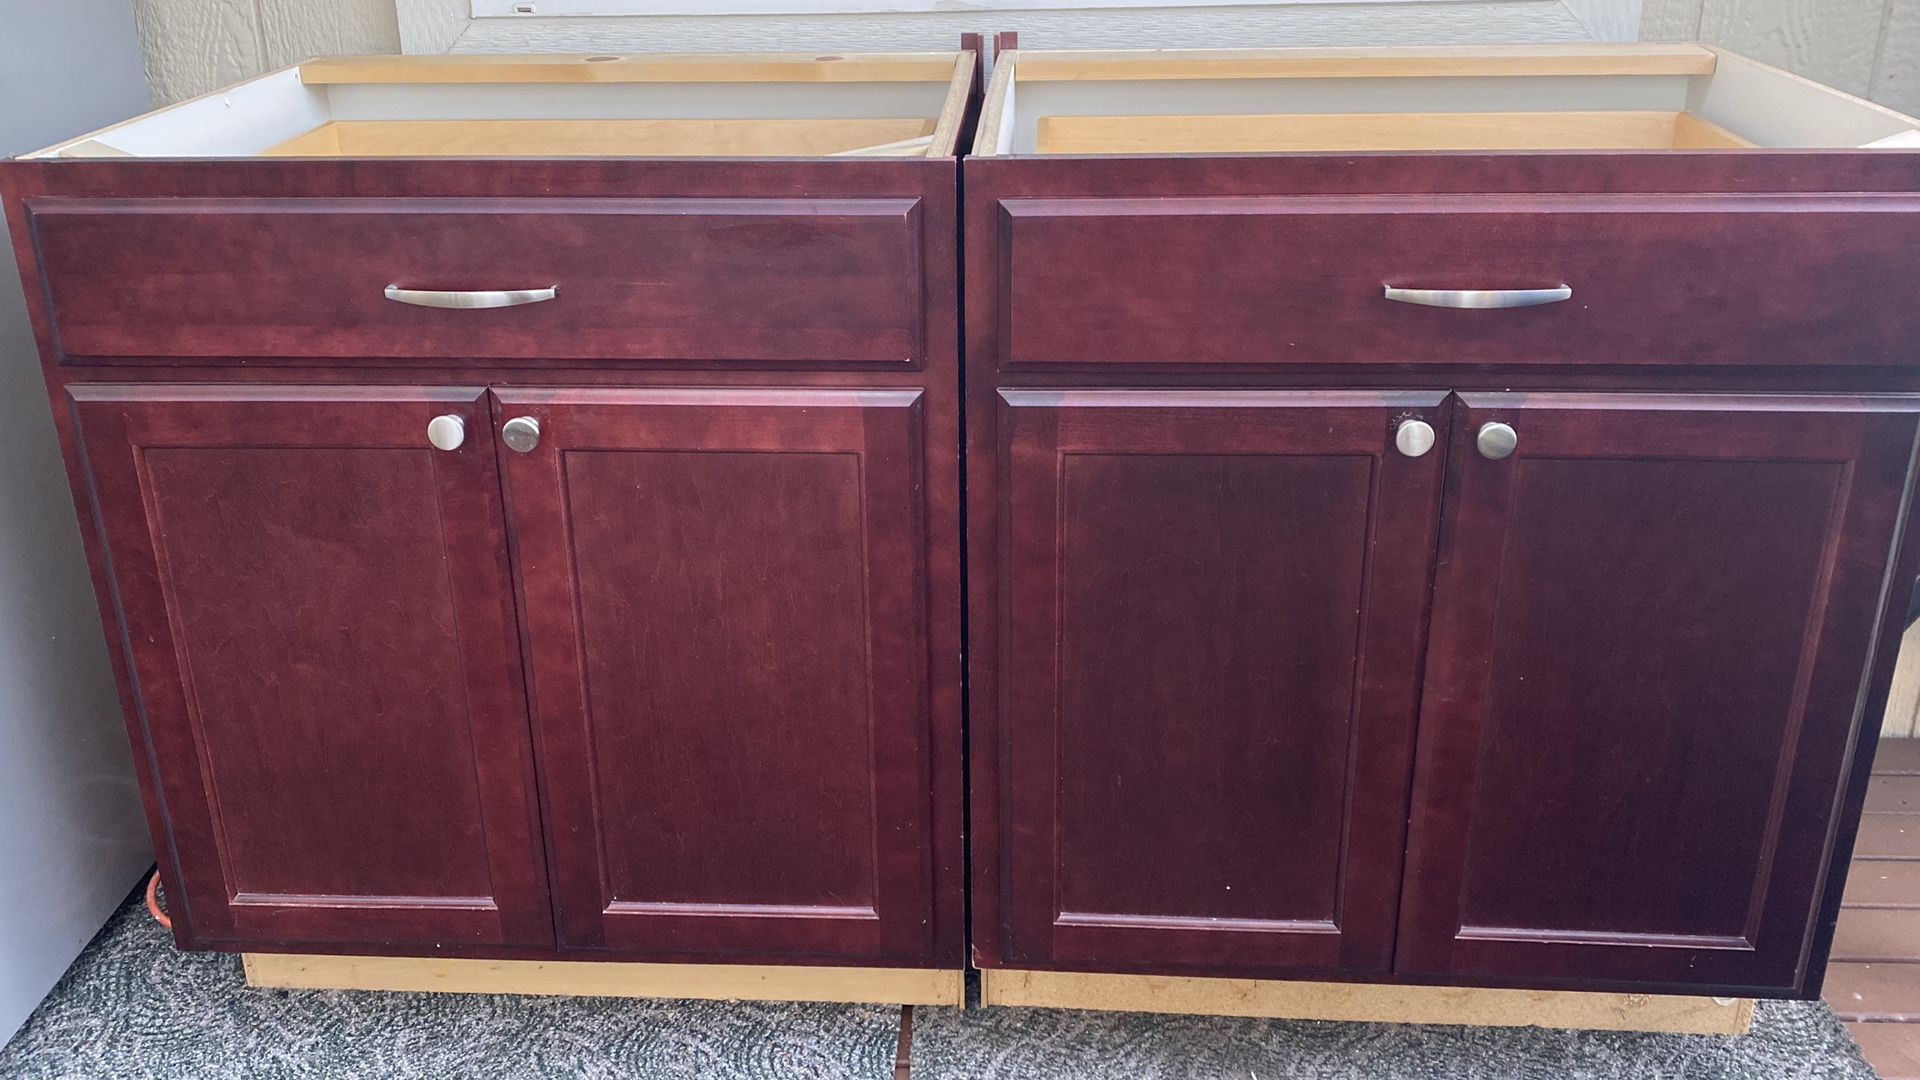 2 kitchen cabinets